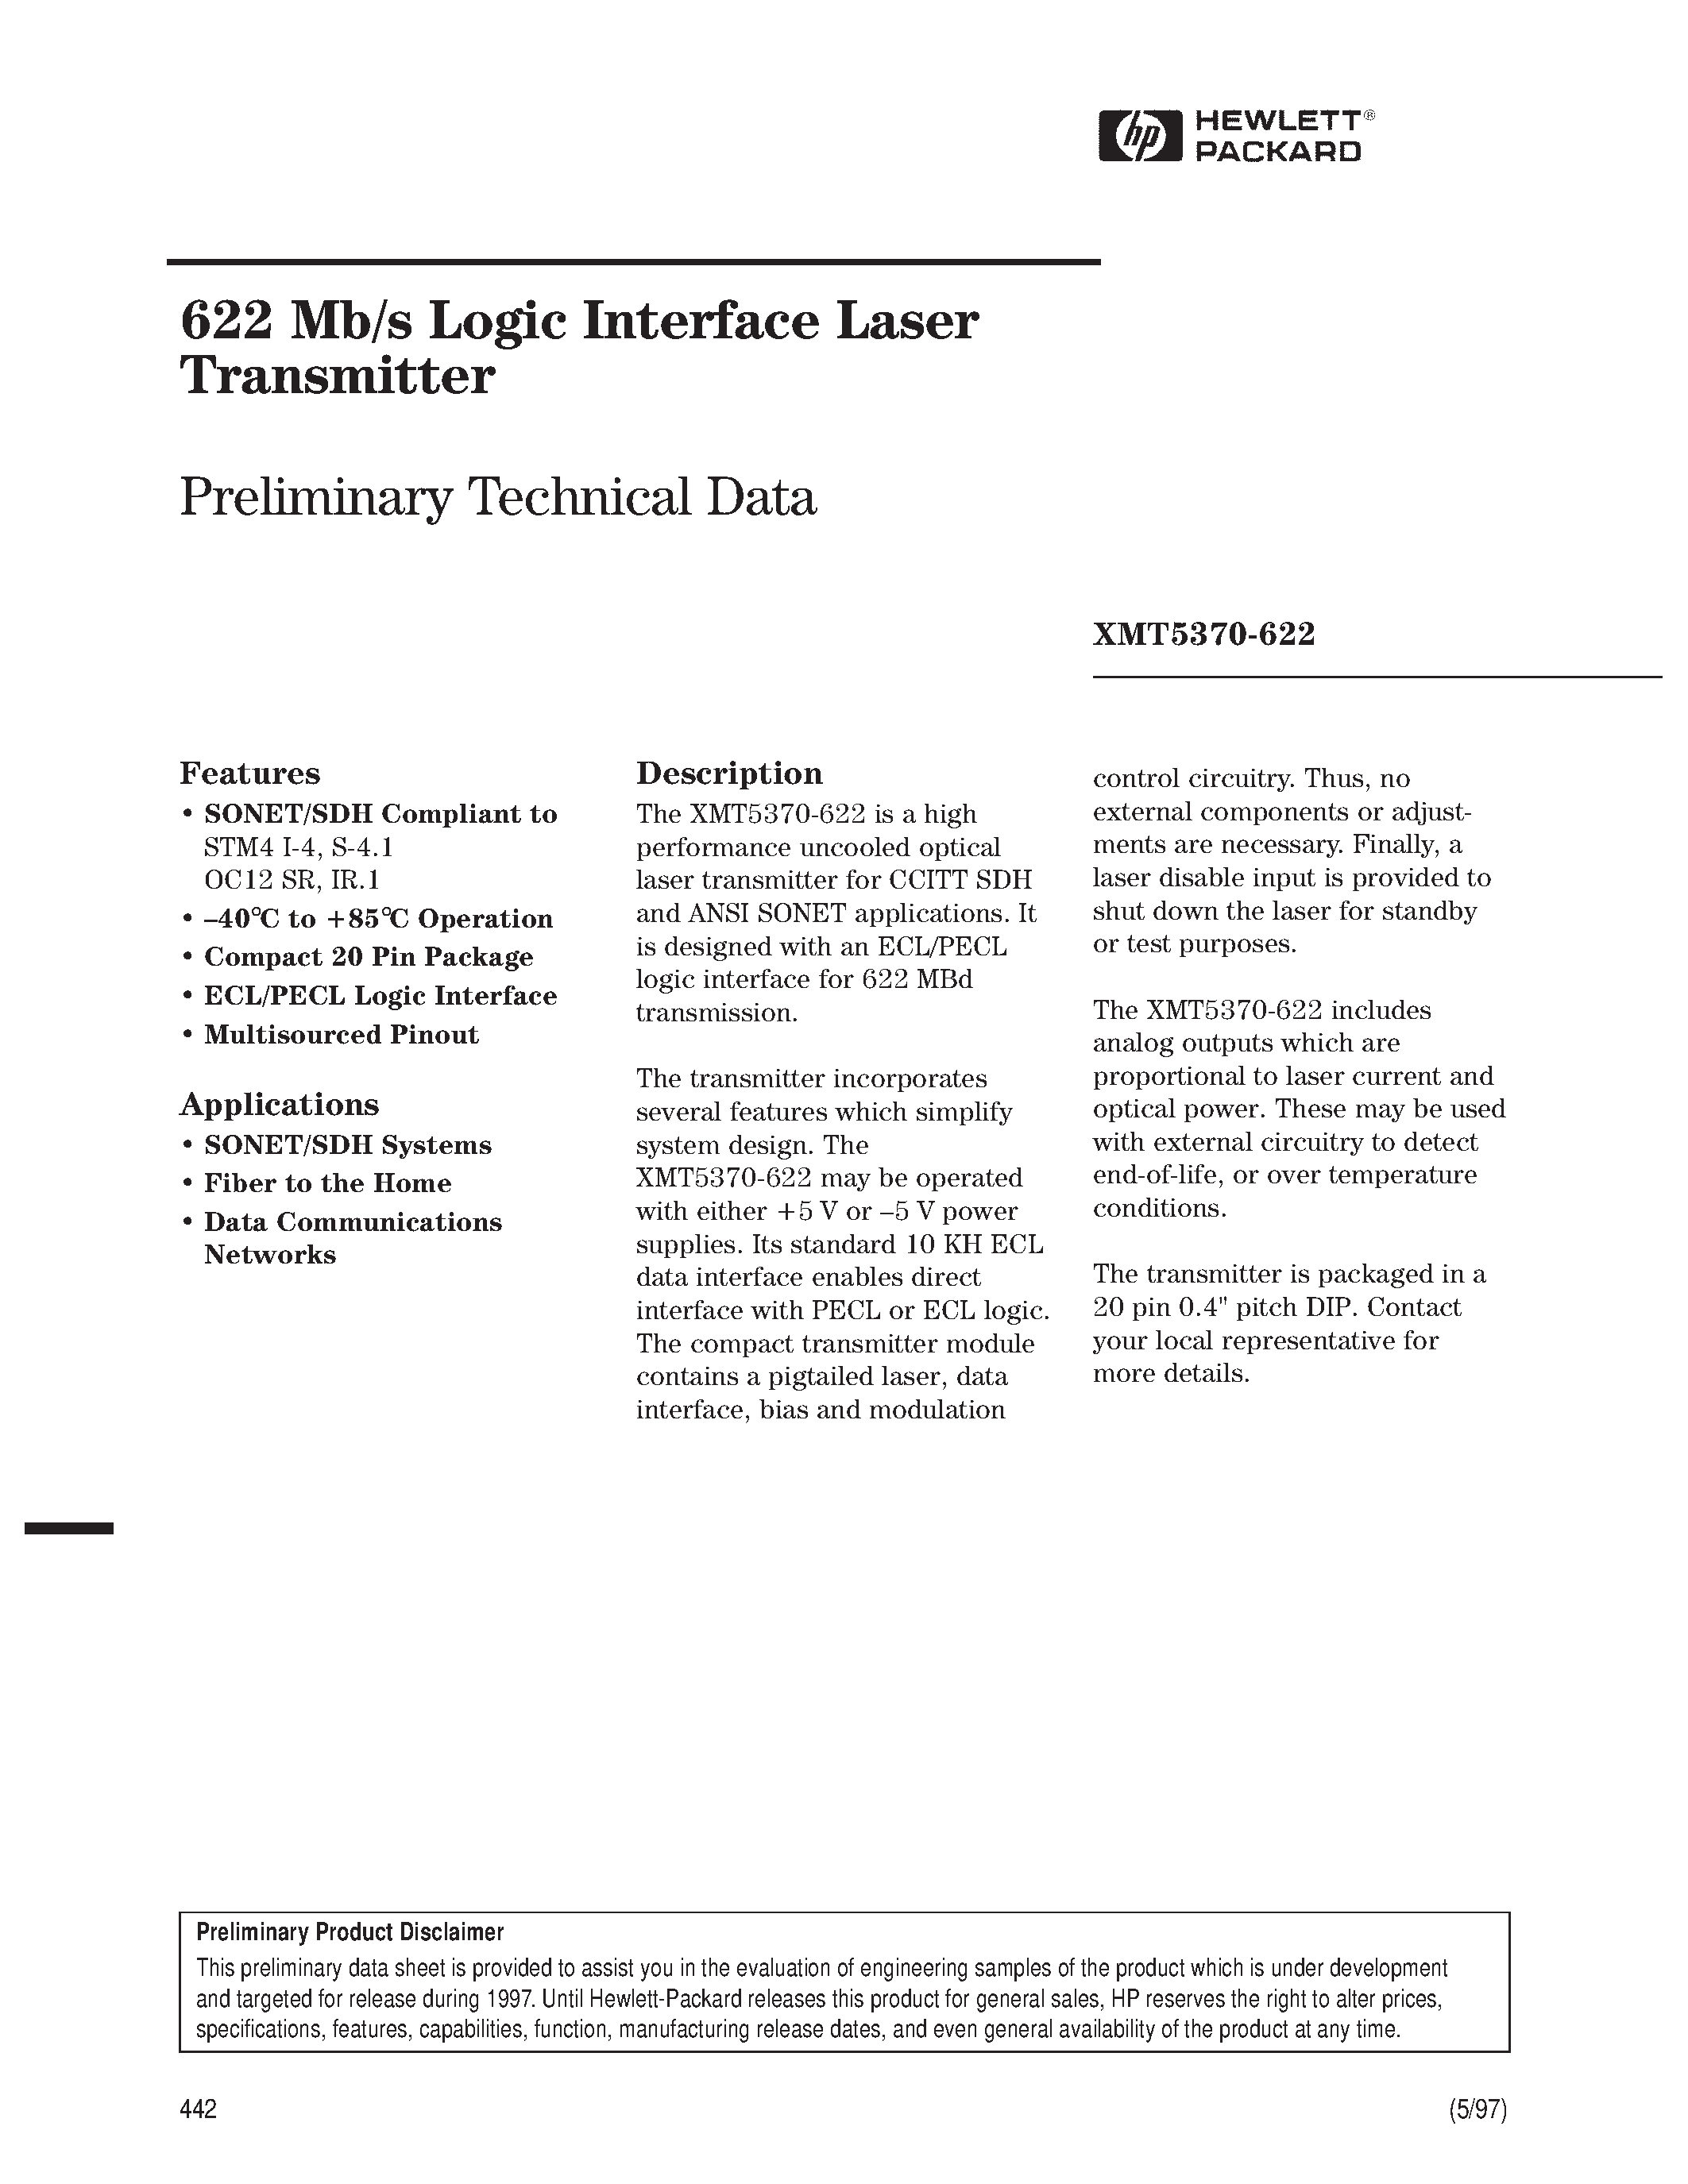 Datasheet XMT5160B-622-ST - 622 Mb/s Logic Interface Laser Transmitter page 1